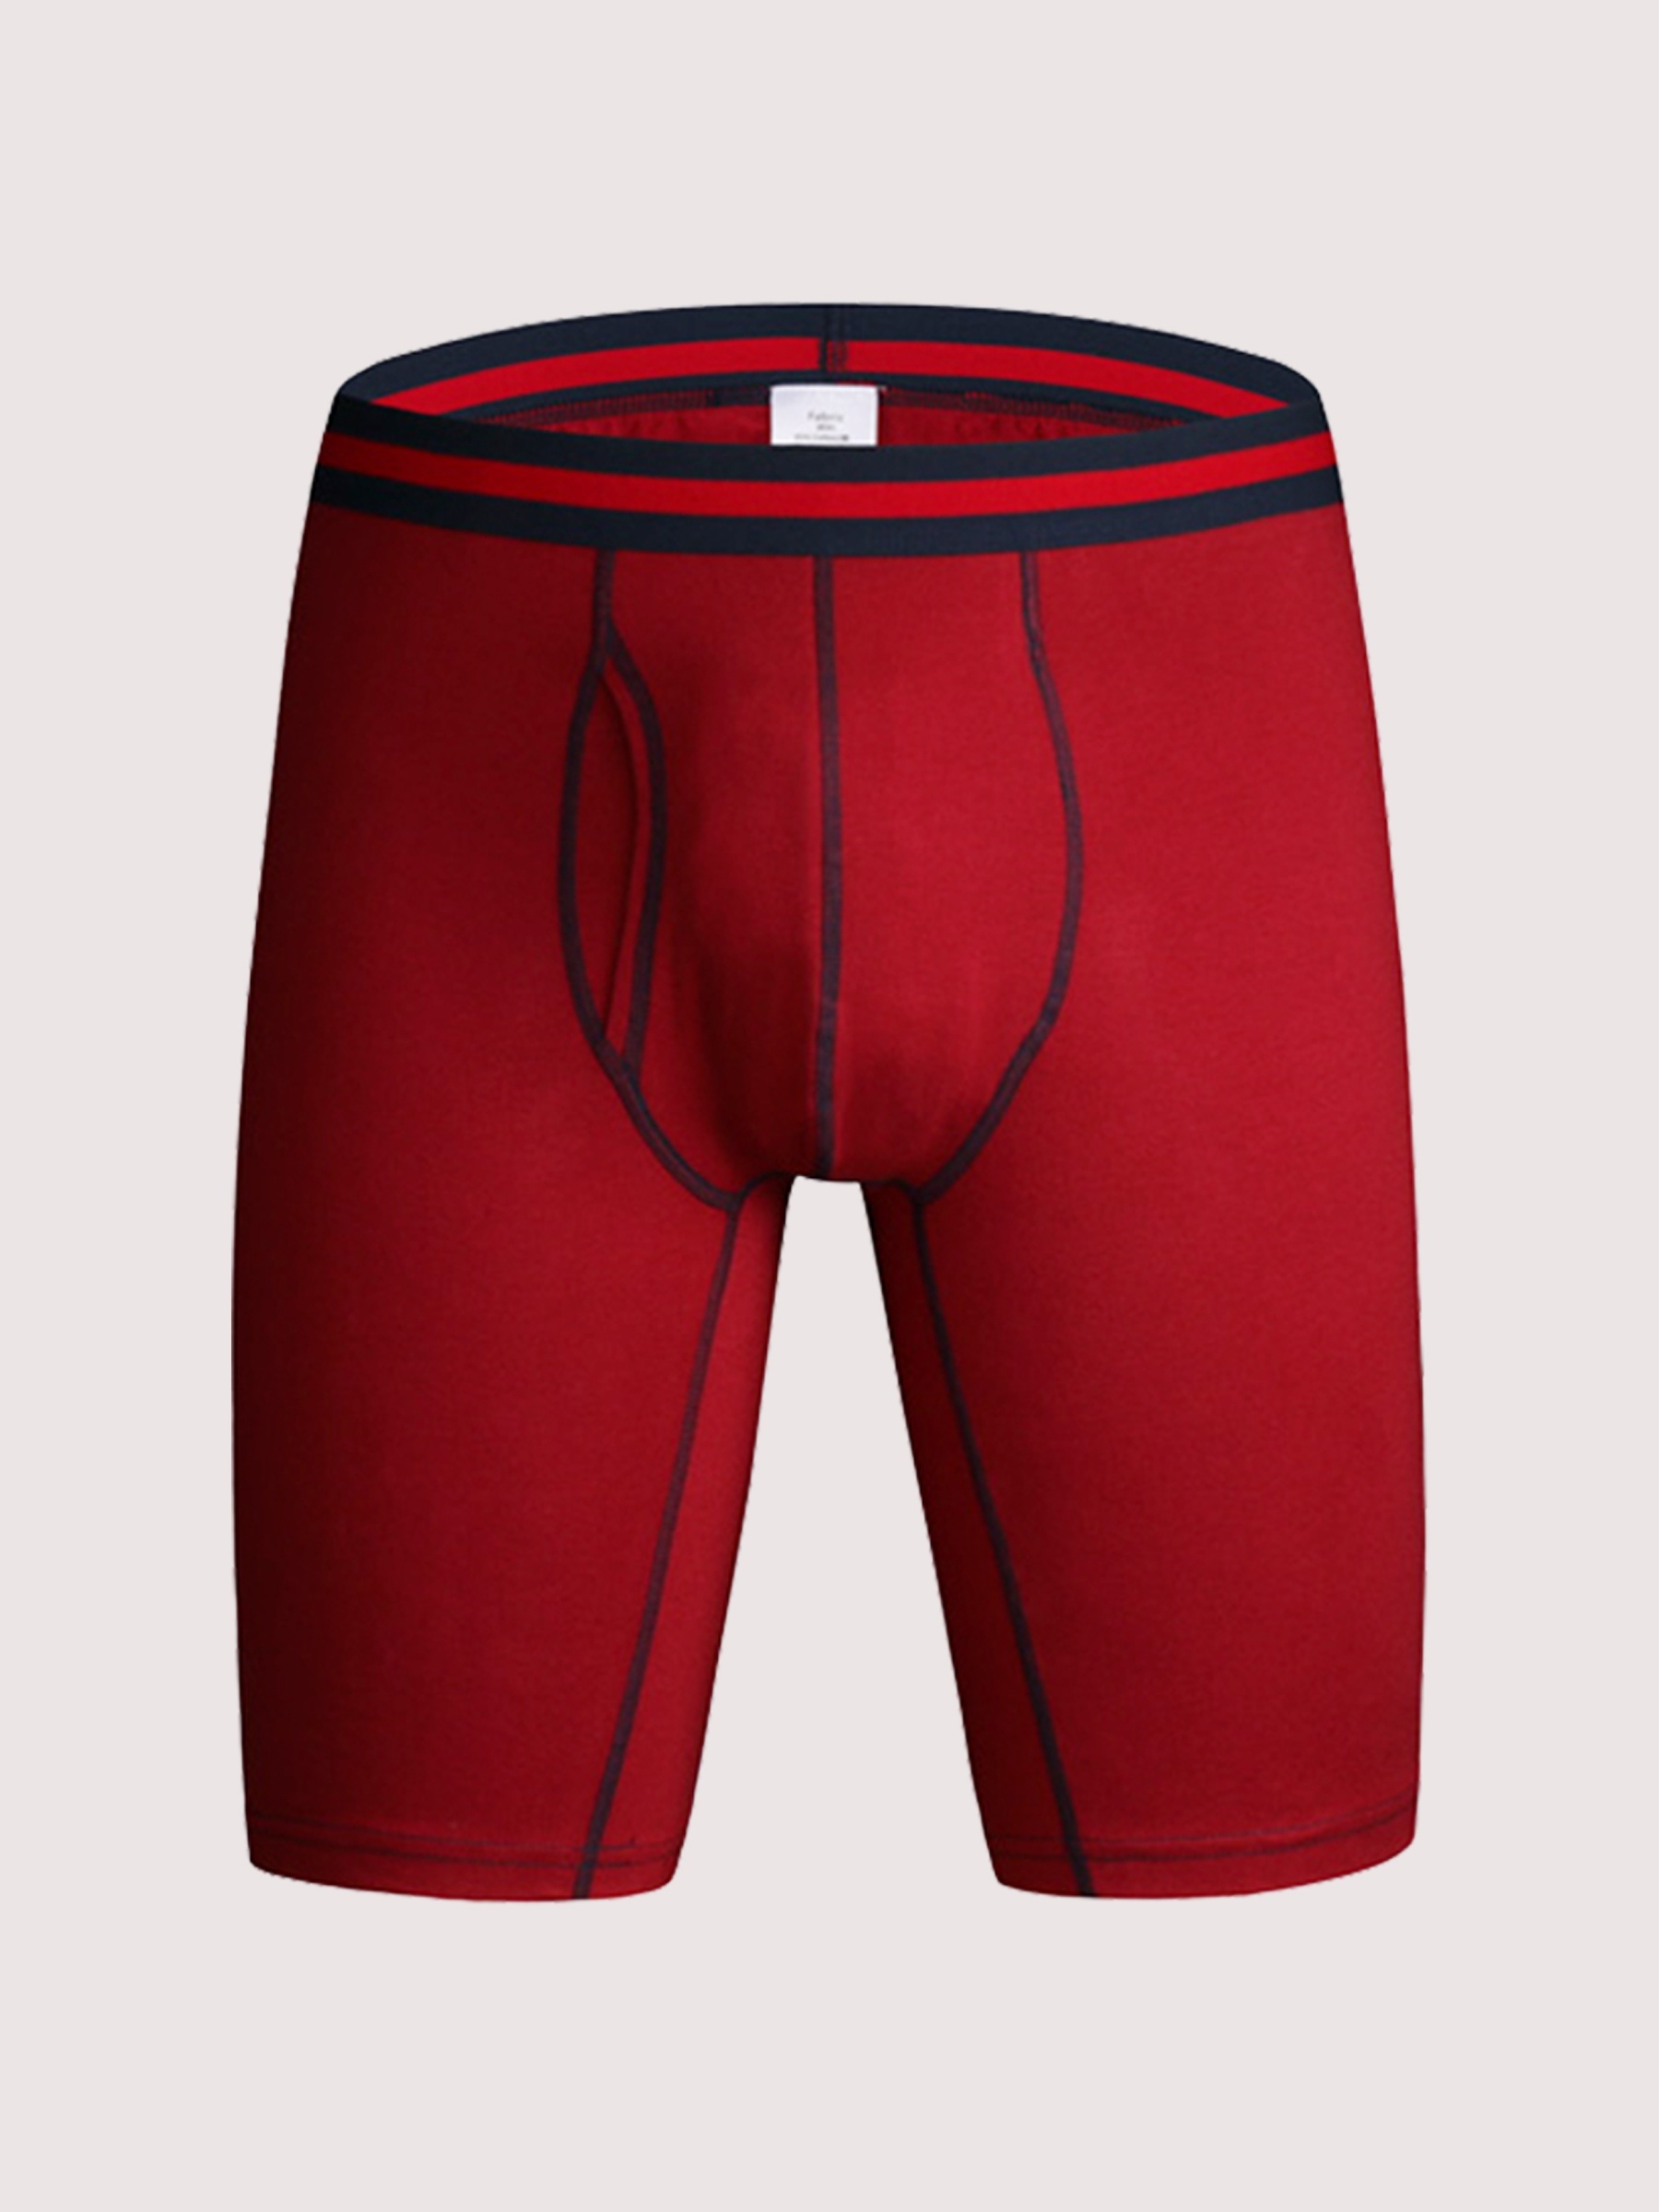 Men's Long Boxer Briefs Shorts Cotton Comfortable Breathable - Temu